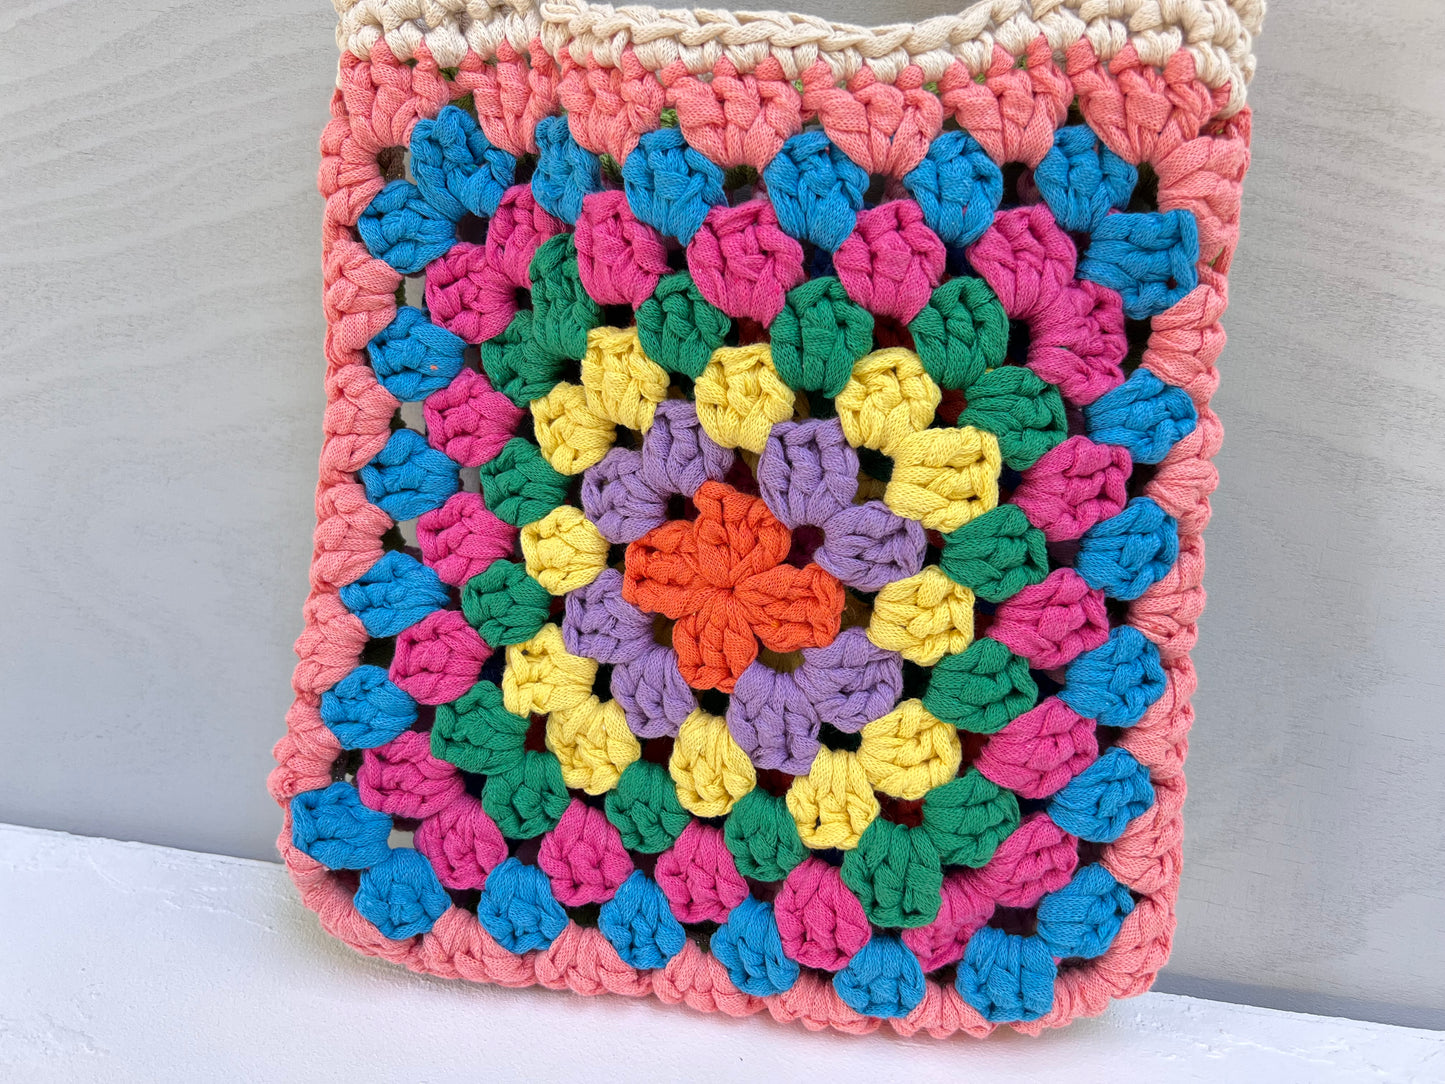 Crocheted colourful granny square tote bag